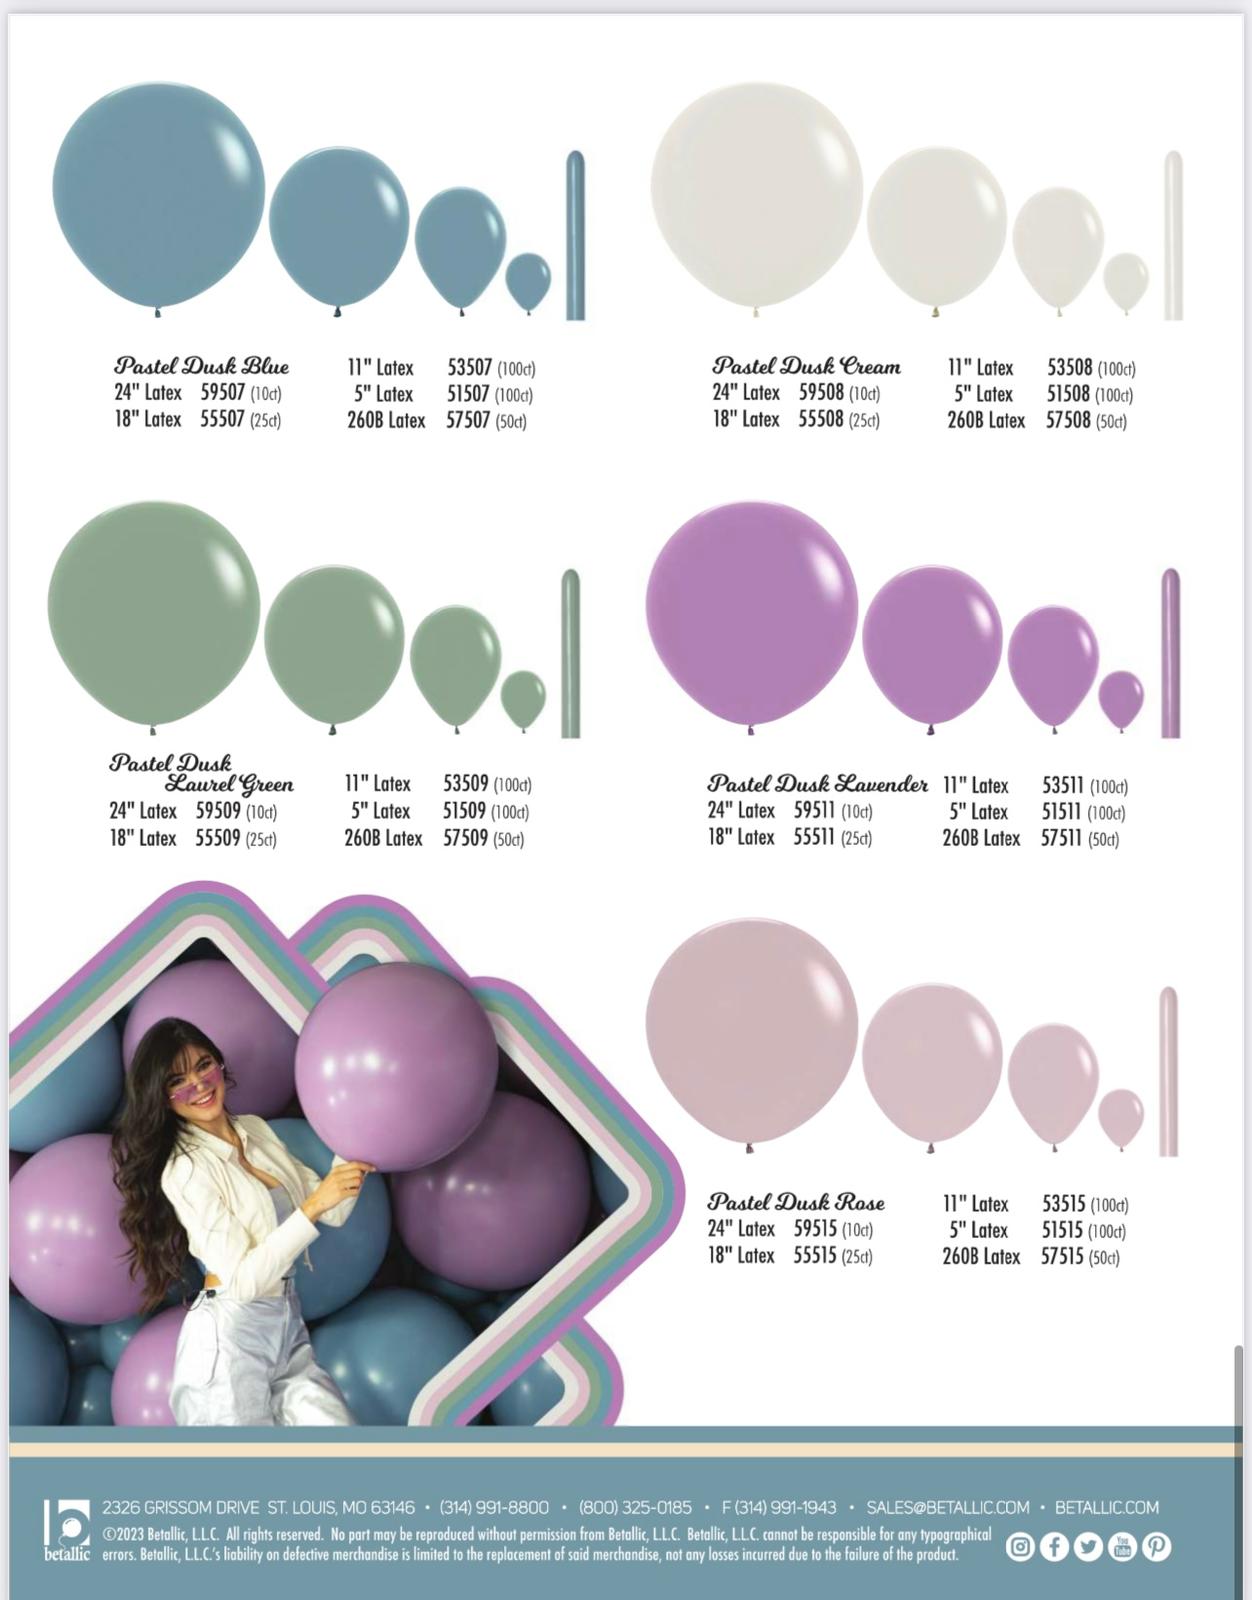 Pastel Dusk Balloons balloons supplier